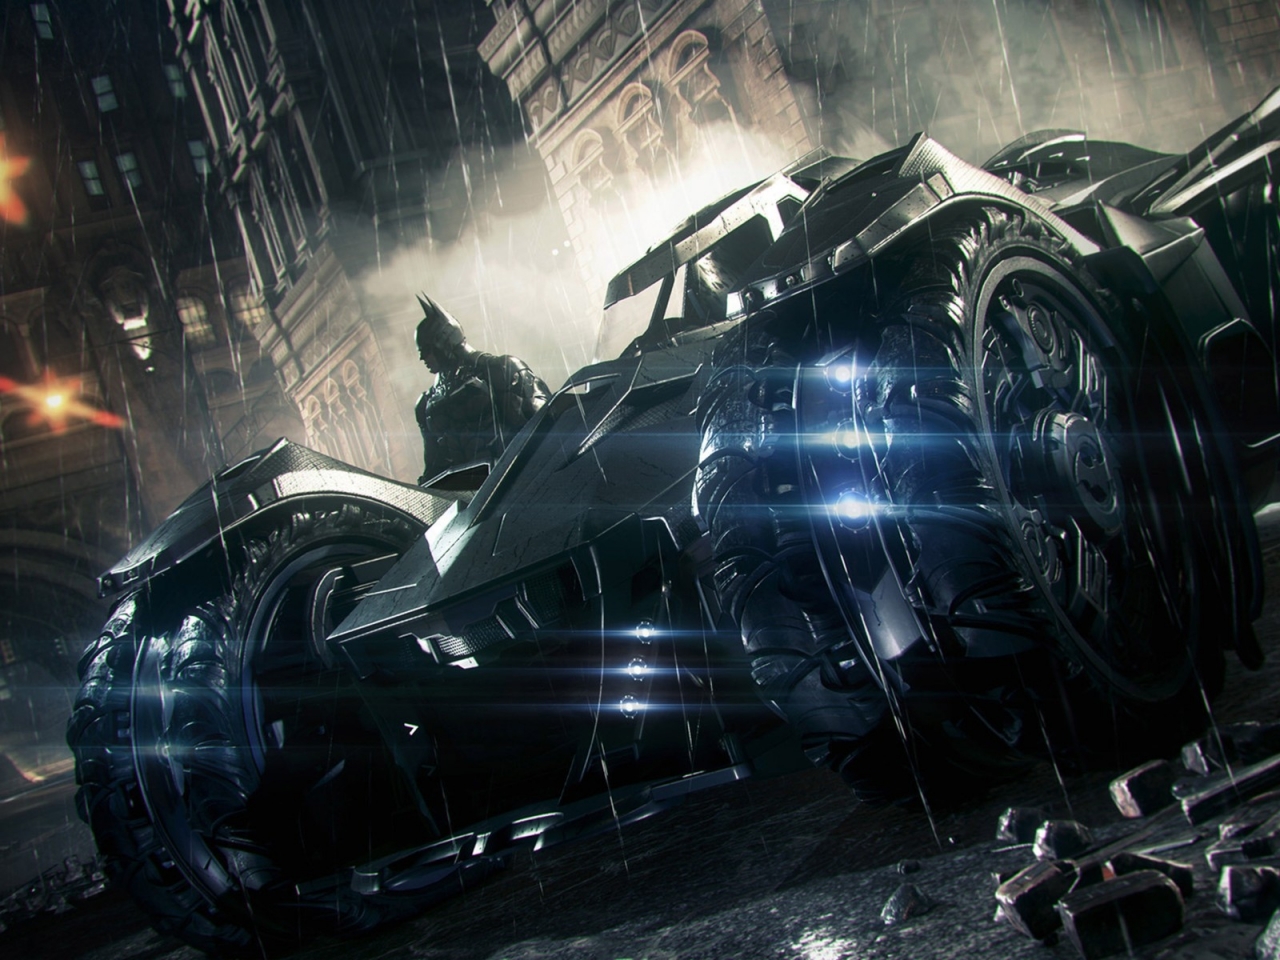 Batman Arkham Knight 3 Car for 1280 x 960 resolution